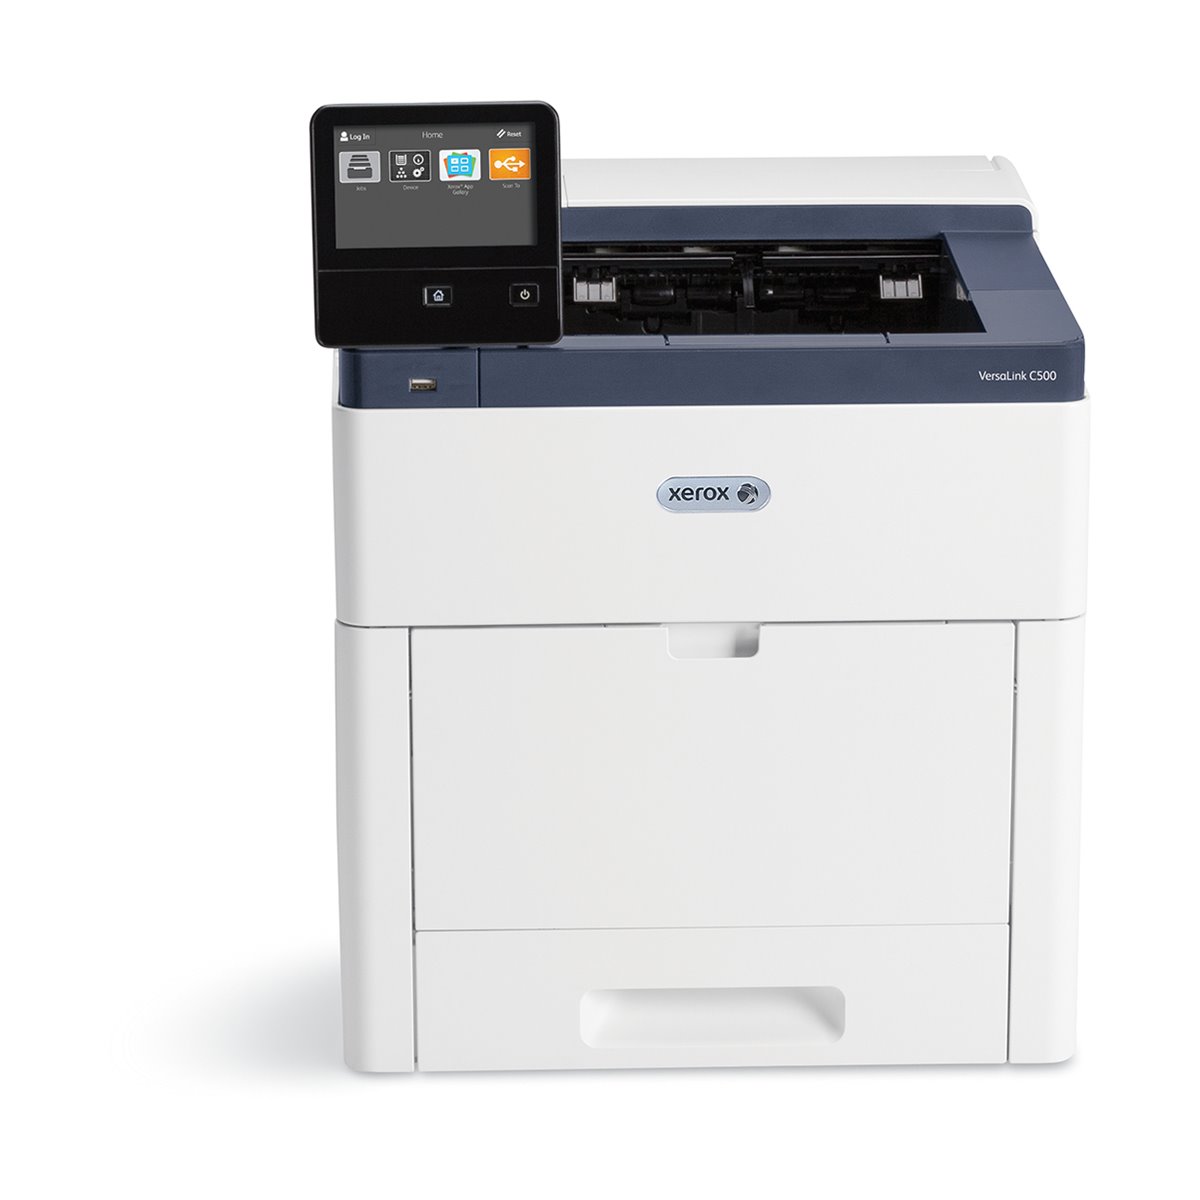 VersaLink C500 - LED Printer - Colour - 43 ppm Mono / 43 ppm Color - 1200 x 2400 dpi - Automatic Duplex Print - 700 Sheets